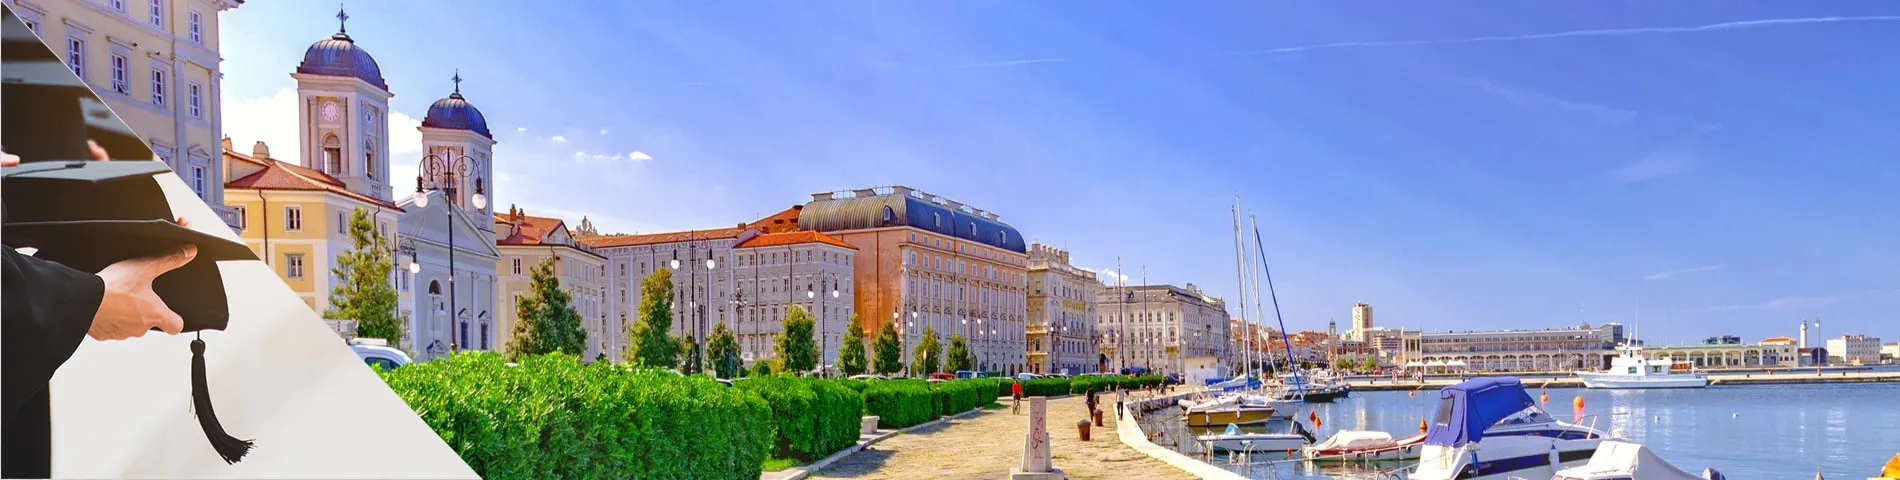 Trieste - Cursos universitaris